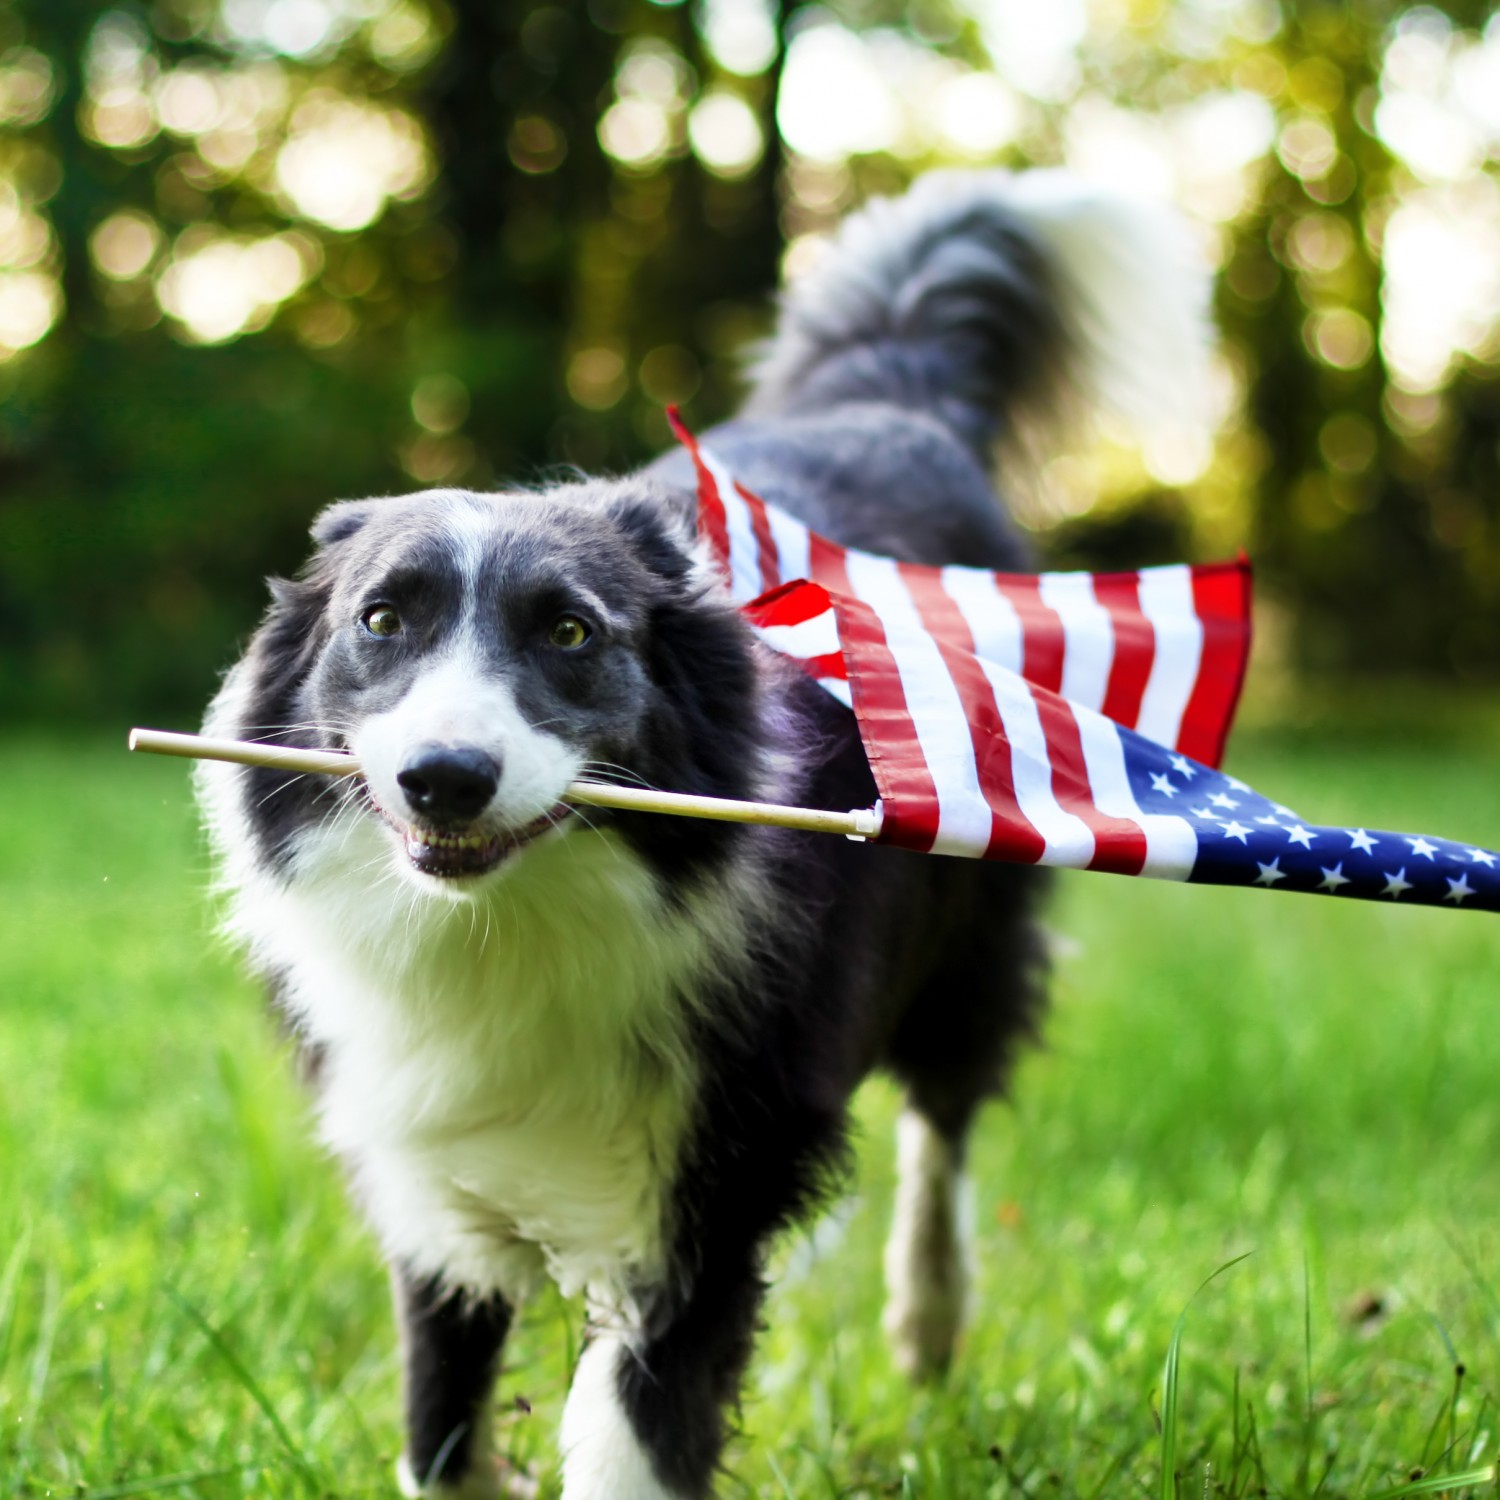 Dog holding flag